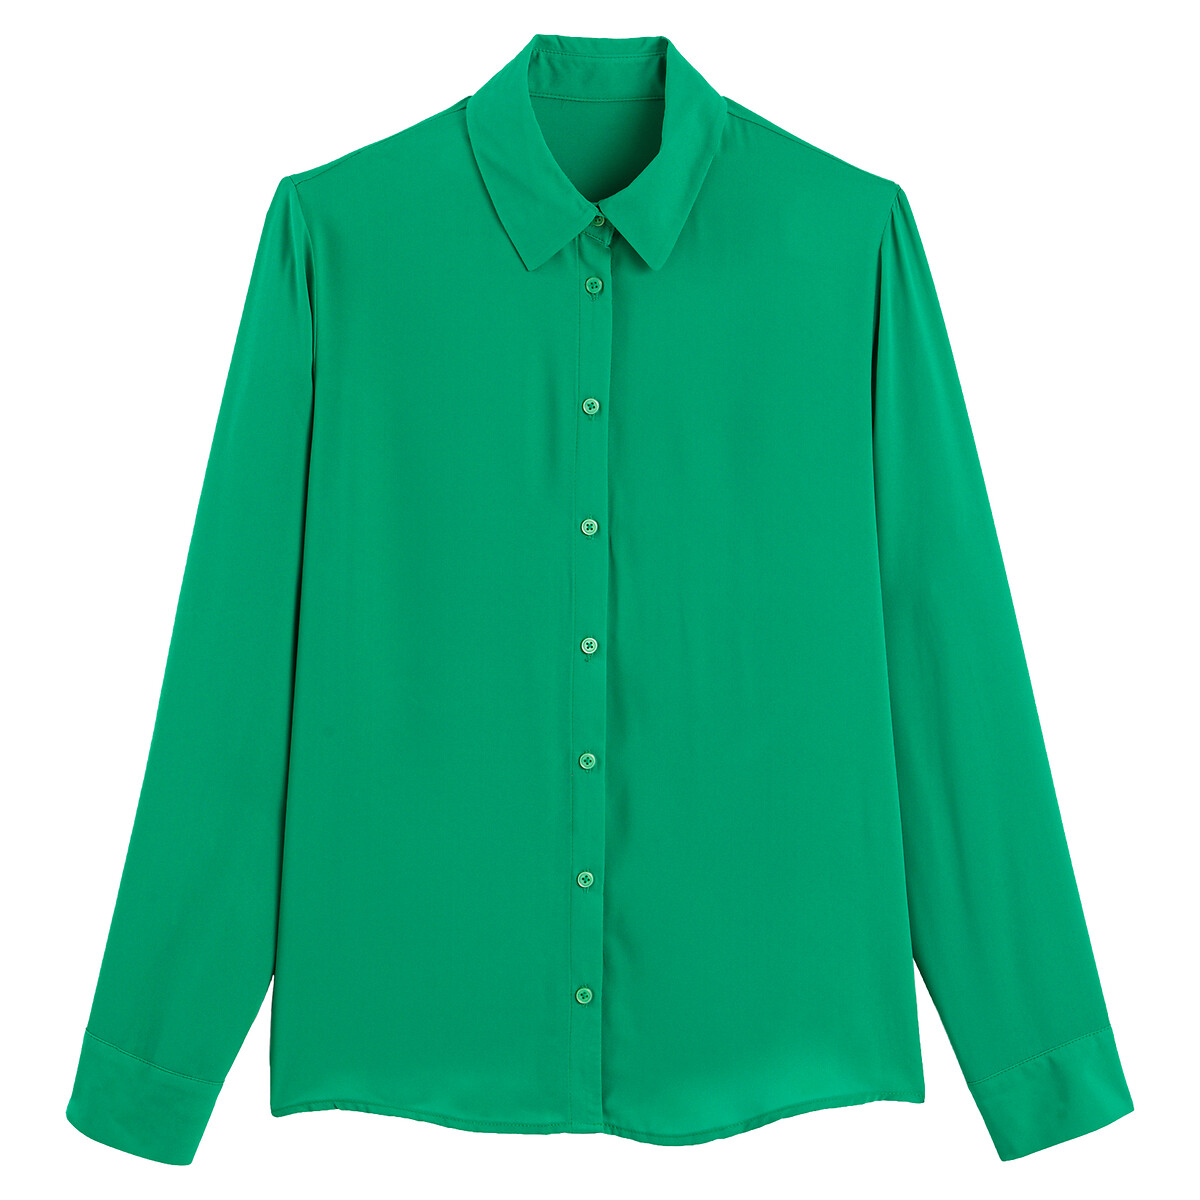 Блузка LA REDOUTE COLLECTIONS Блузка С длинными рукавами 38 (FR) - 44 (RUS) зеленый, размер 38 (FR) - 44 (RUS) Блузка С длинными рукавами 38 (FR) - 44 (RUS) зеленый - фото 5